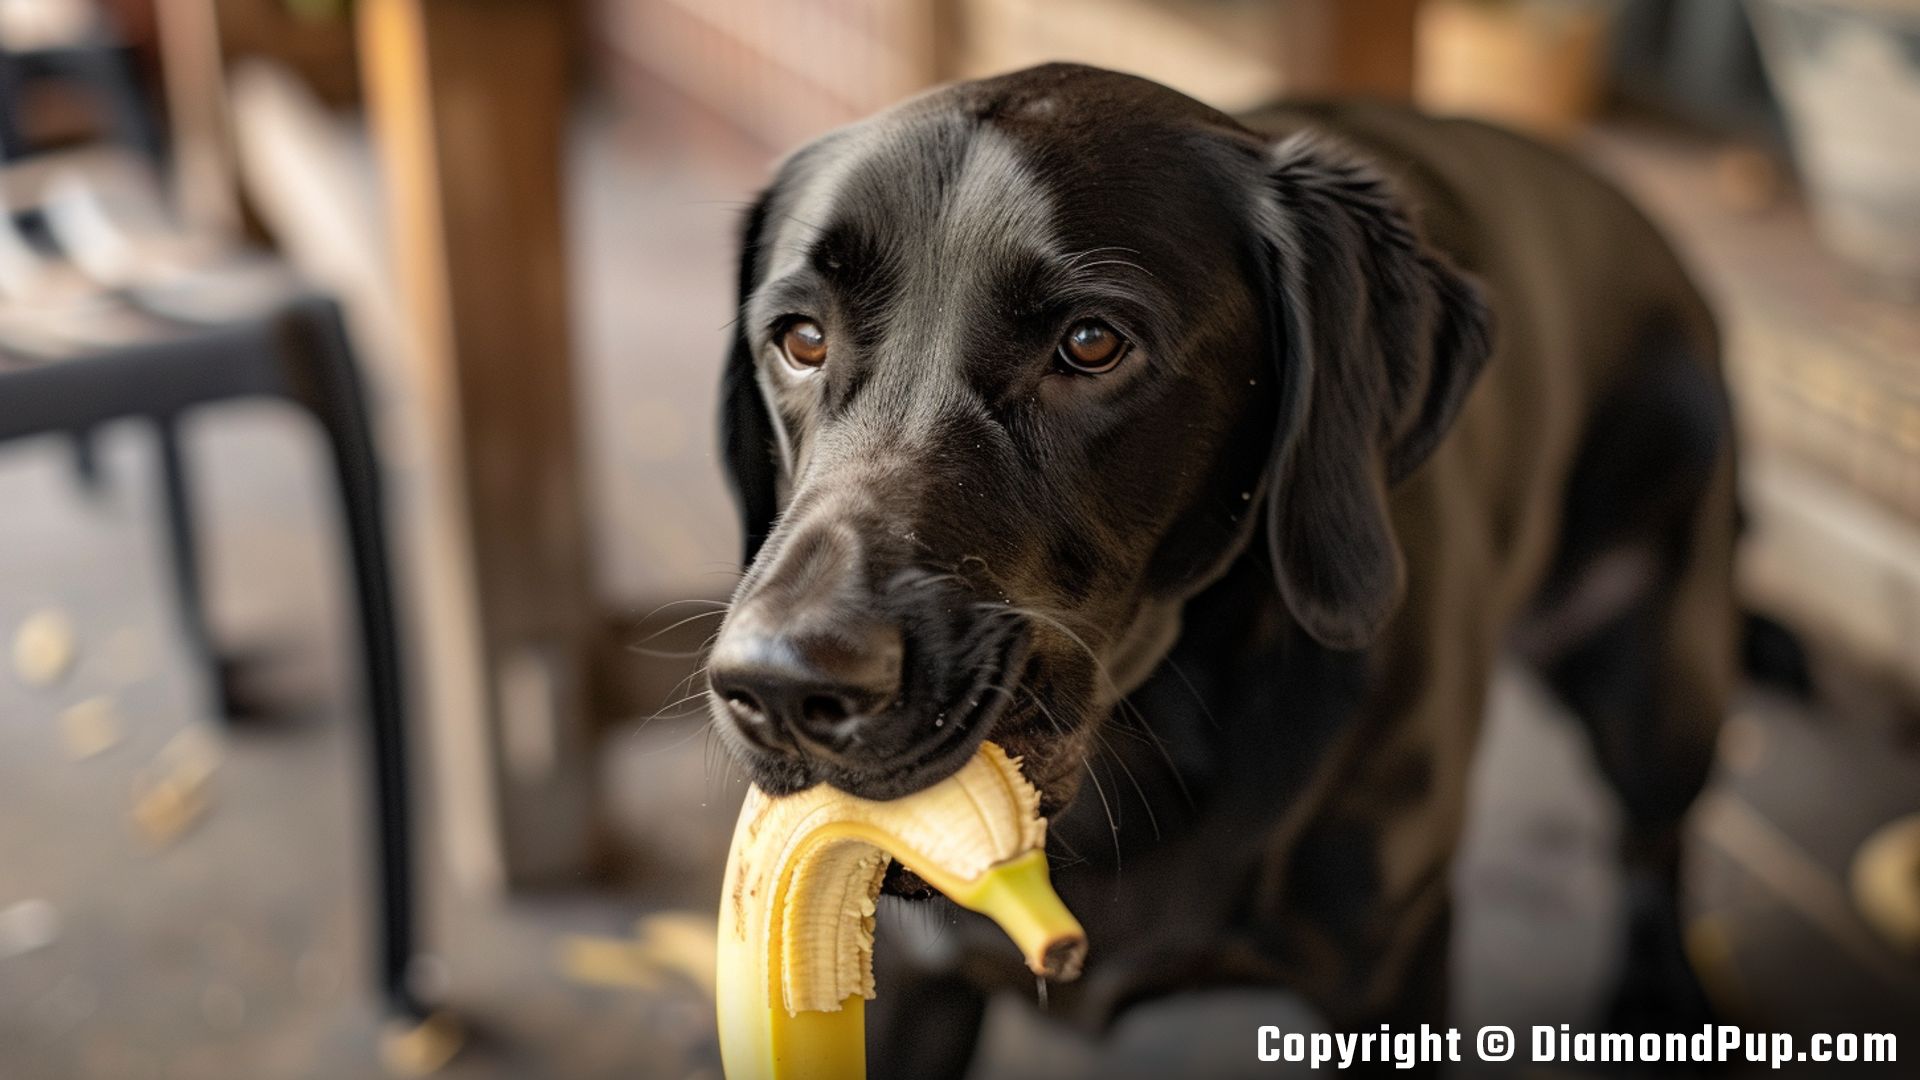 Photograph of a Happy Labrador Eating Banana